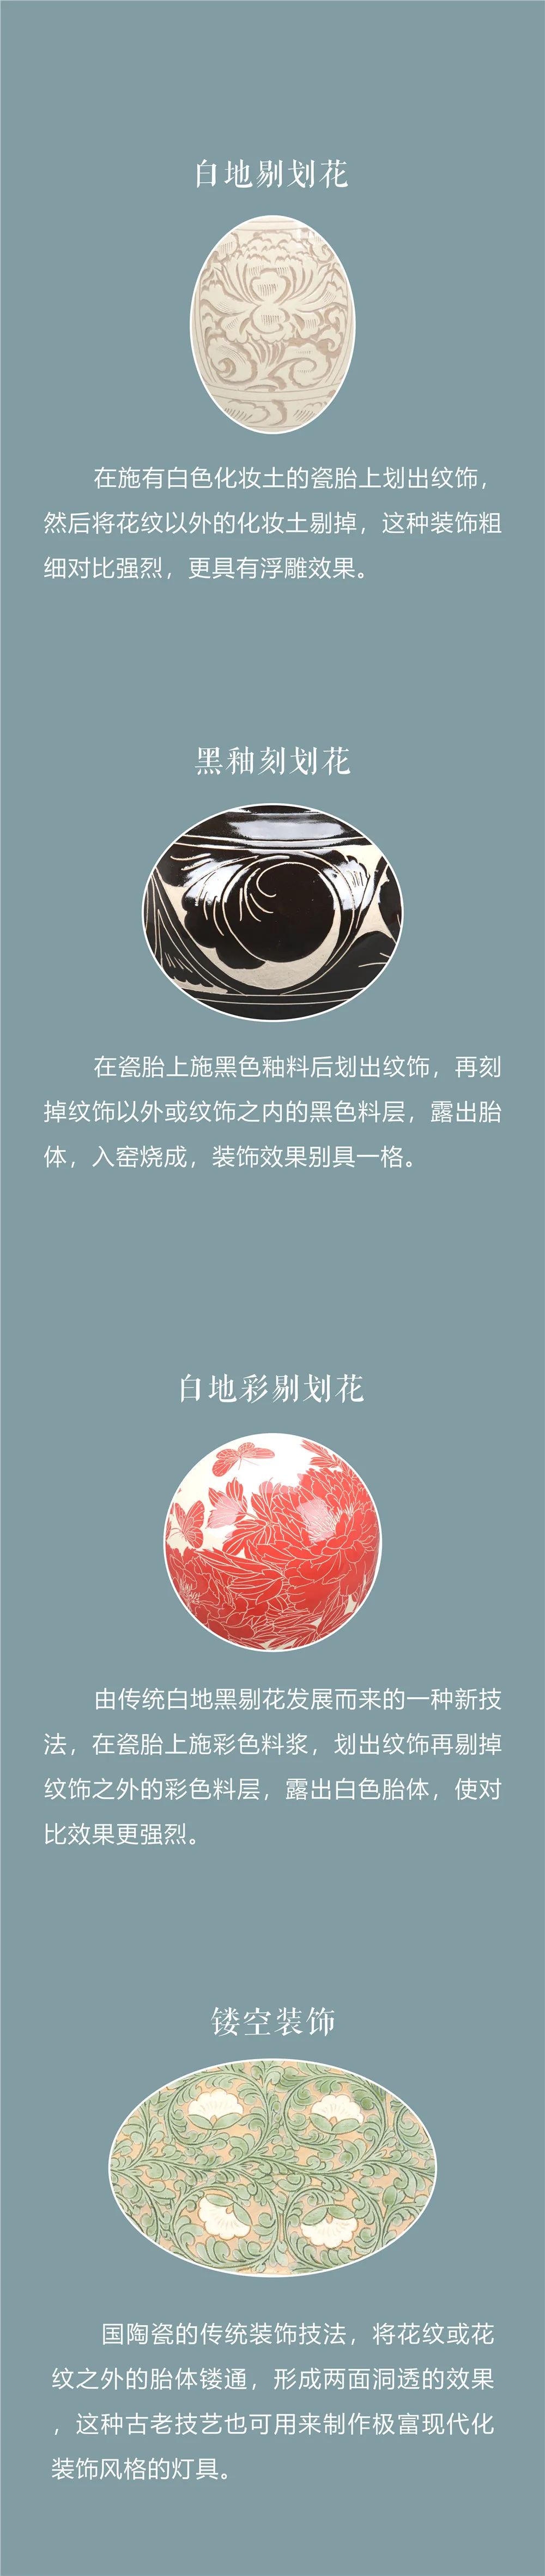 线上展览：《千年窑火生生不息——邯郸市博物馆馆藏磁州窑瓷器展》第二期